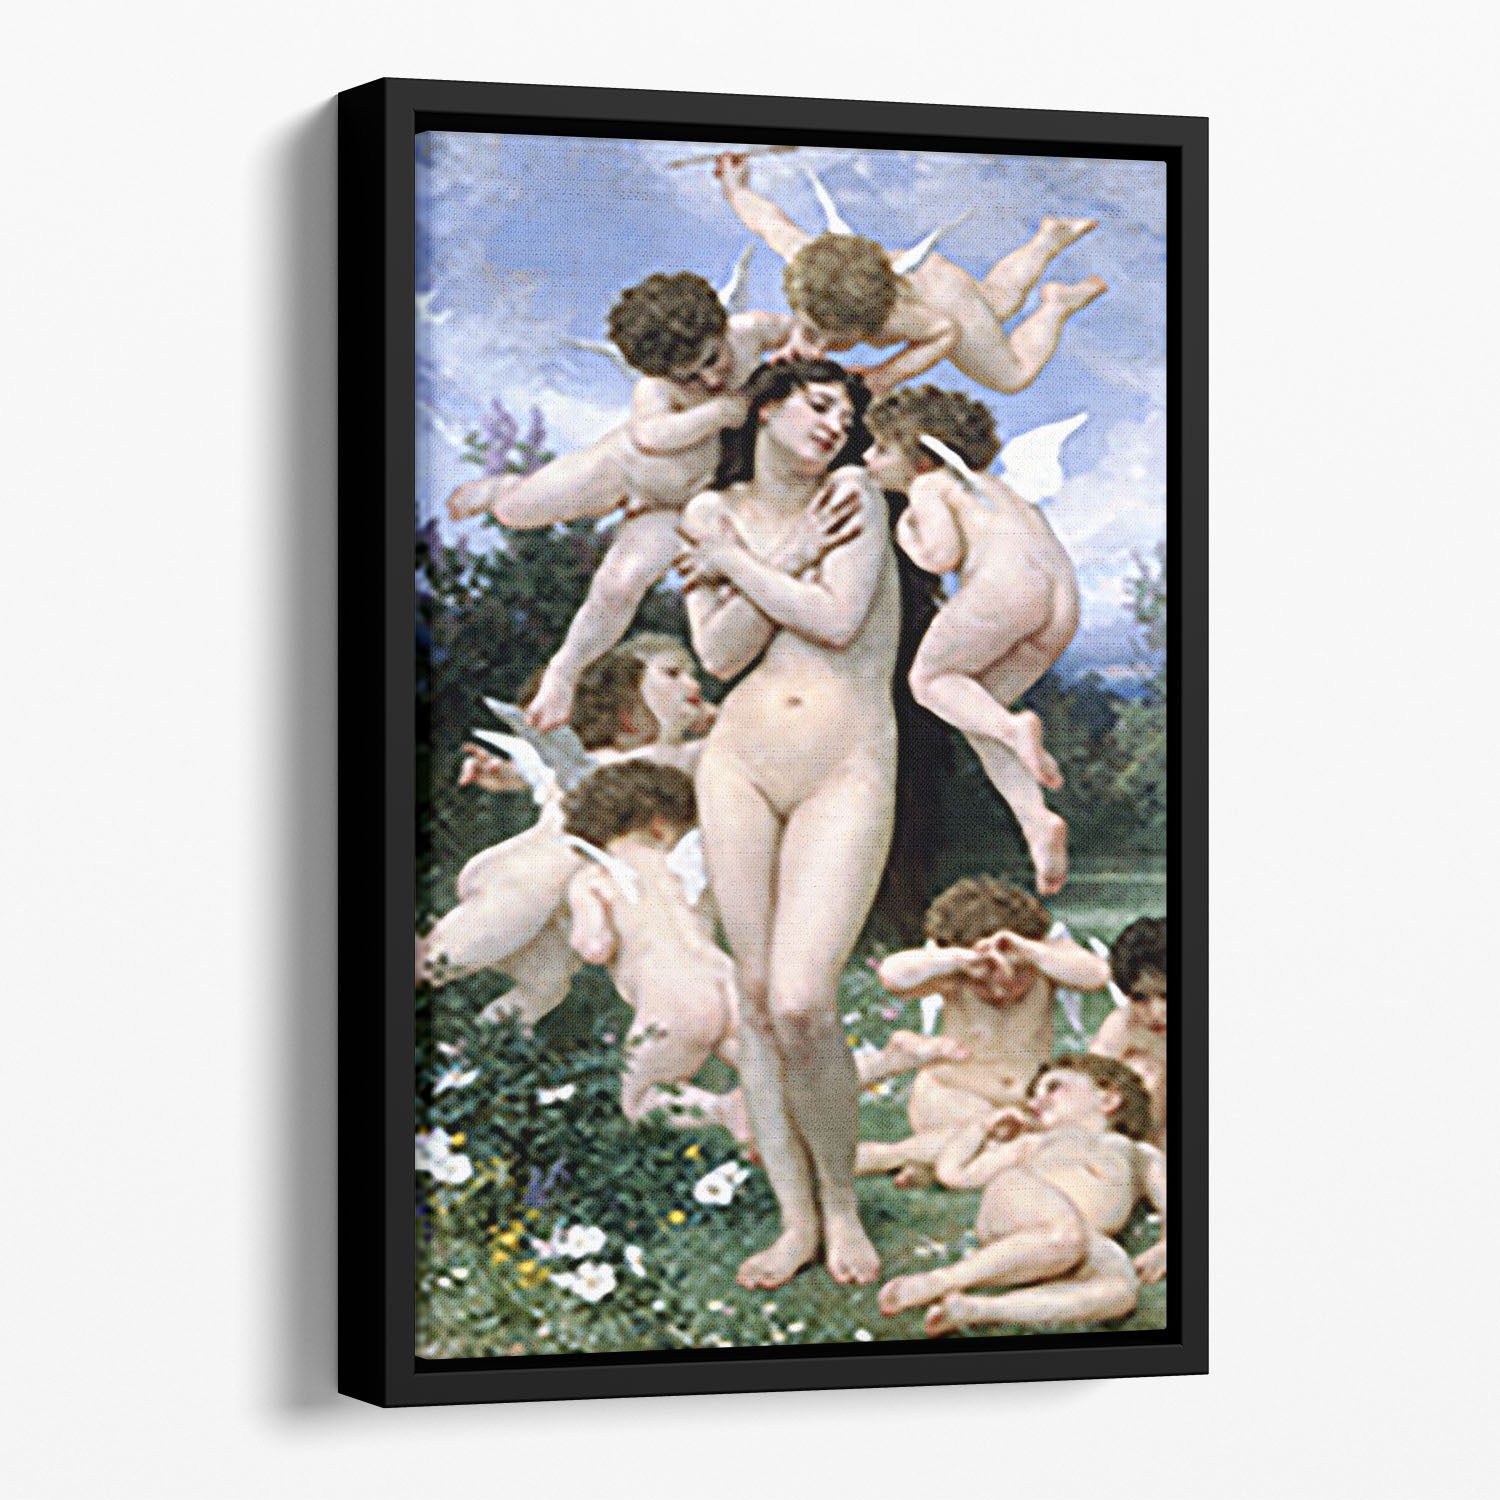 Return of Spring By Bouguereau Floating Framed Canvas